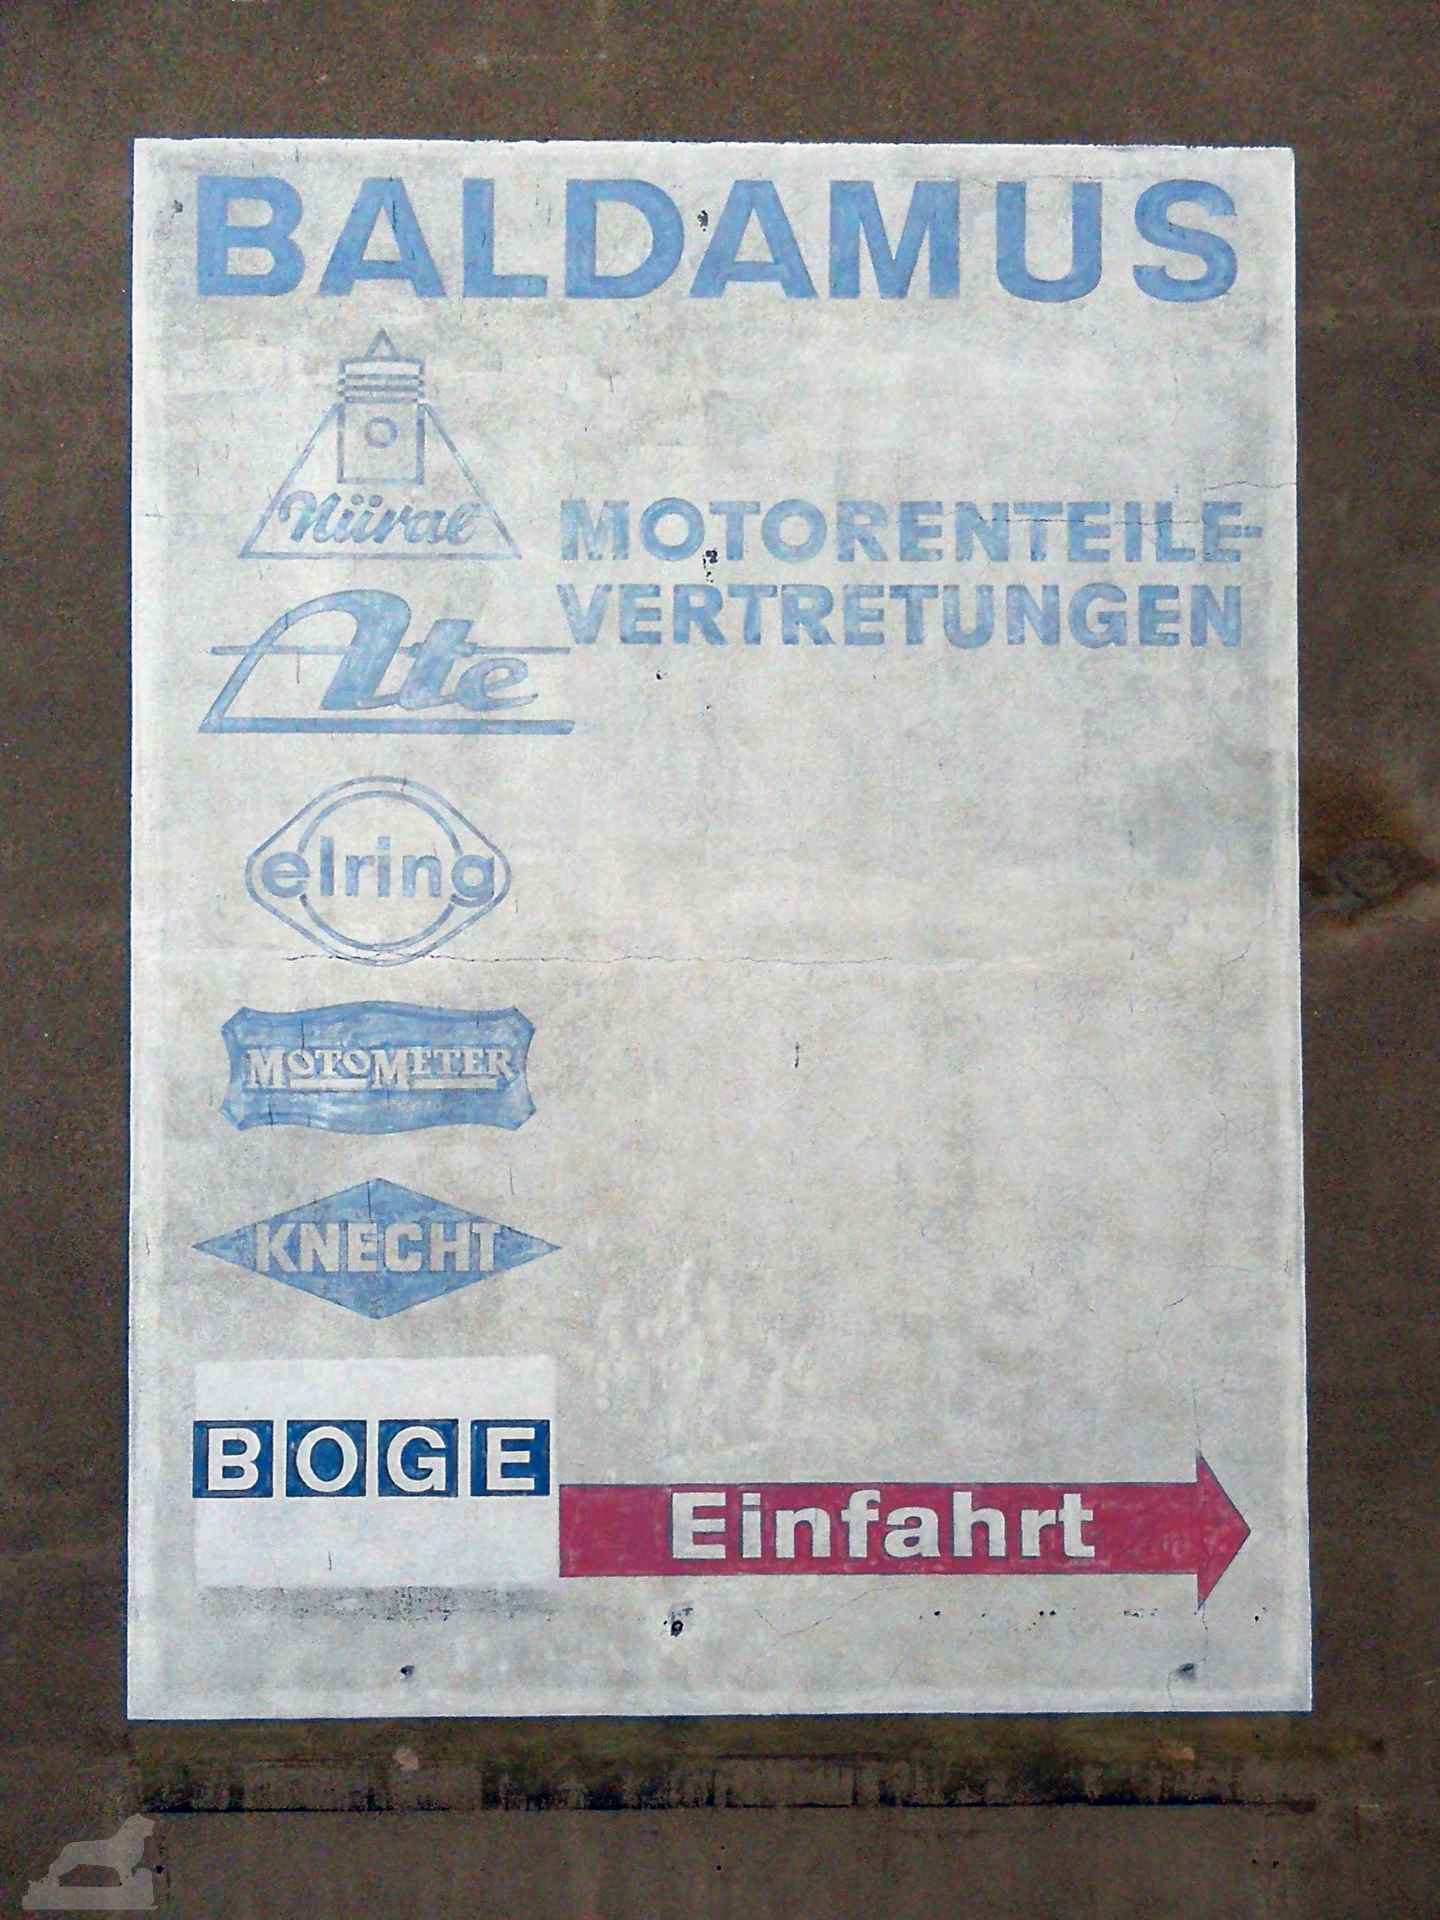 Baldamus Kfz-Teile in der Scharnstraße